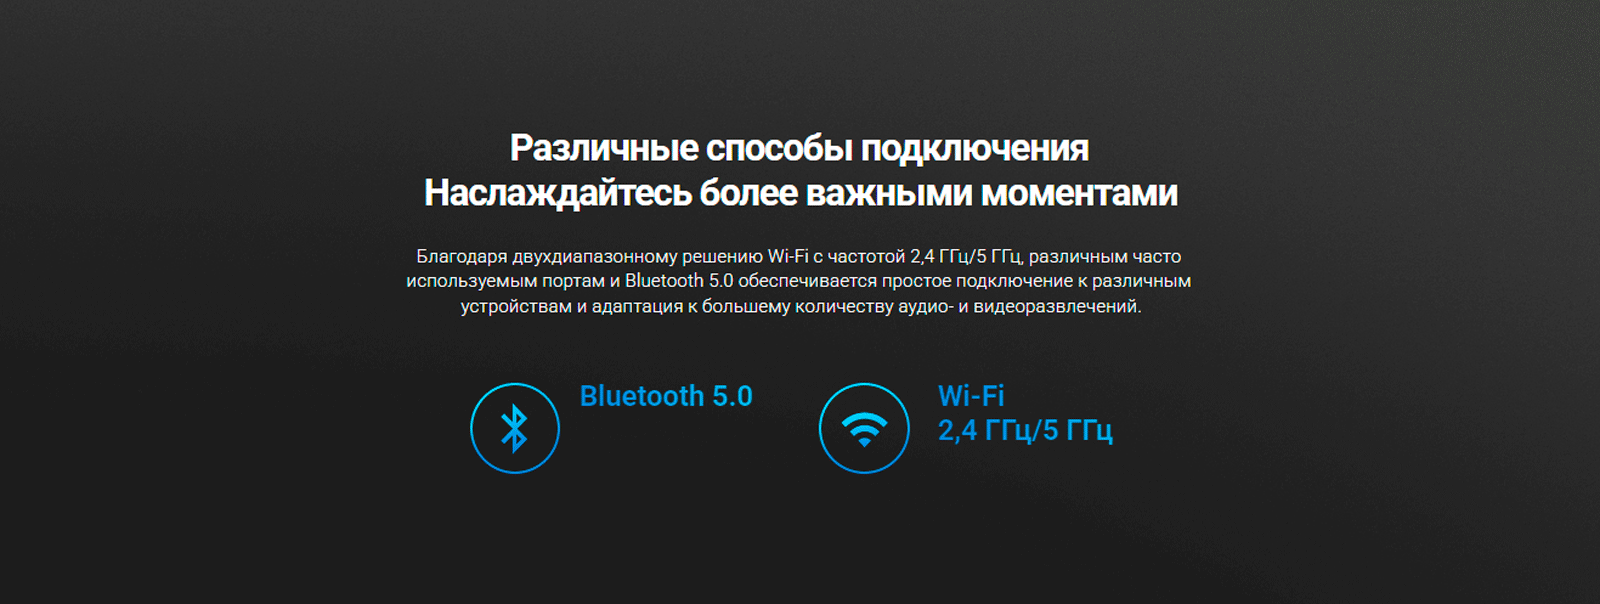 Возможность подключения с помощью Bluetooth и Wi-Fi.